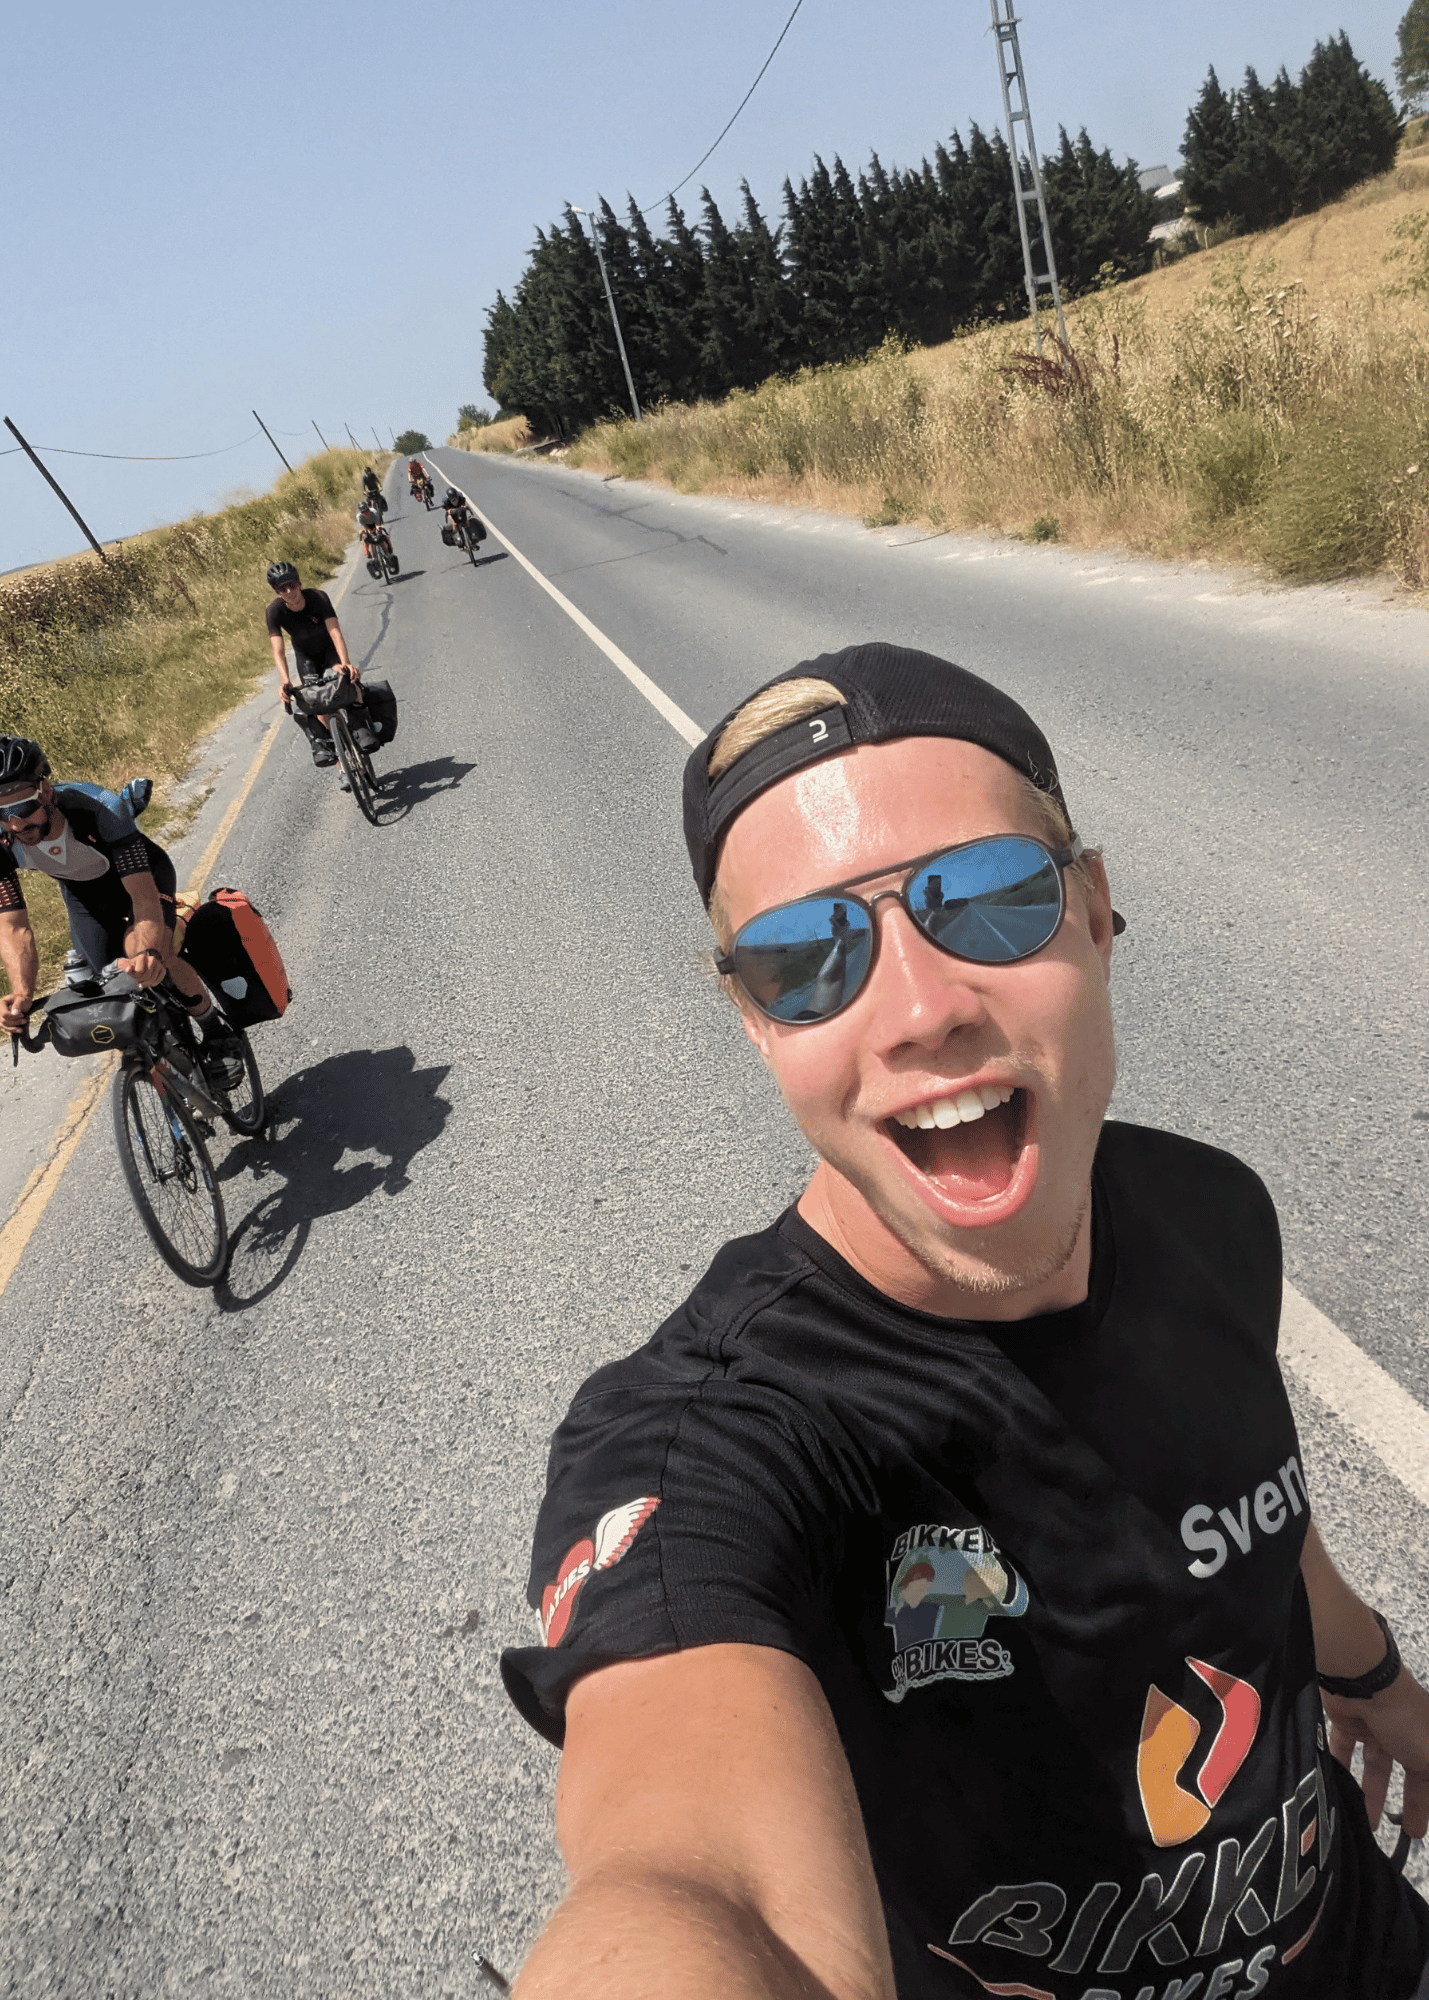 Sven en Rick, Bikkels on Bikes, fietsen met andere fietsers door Turkije